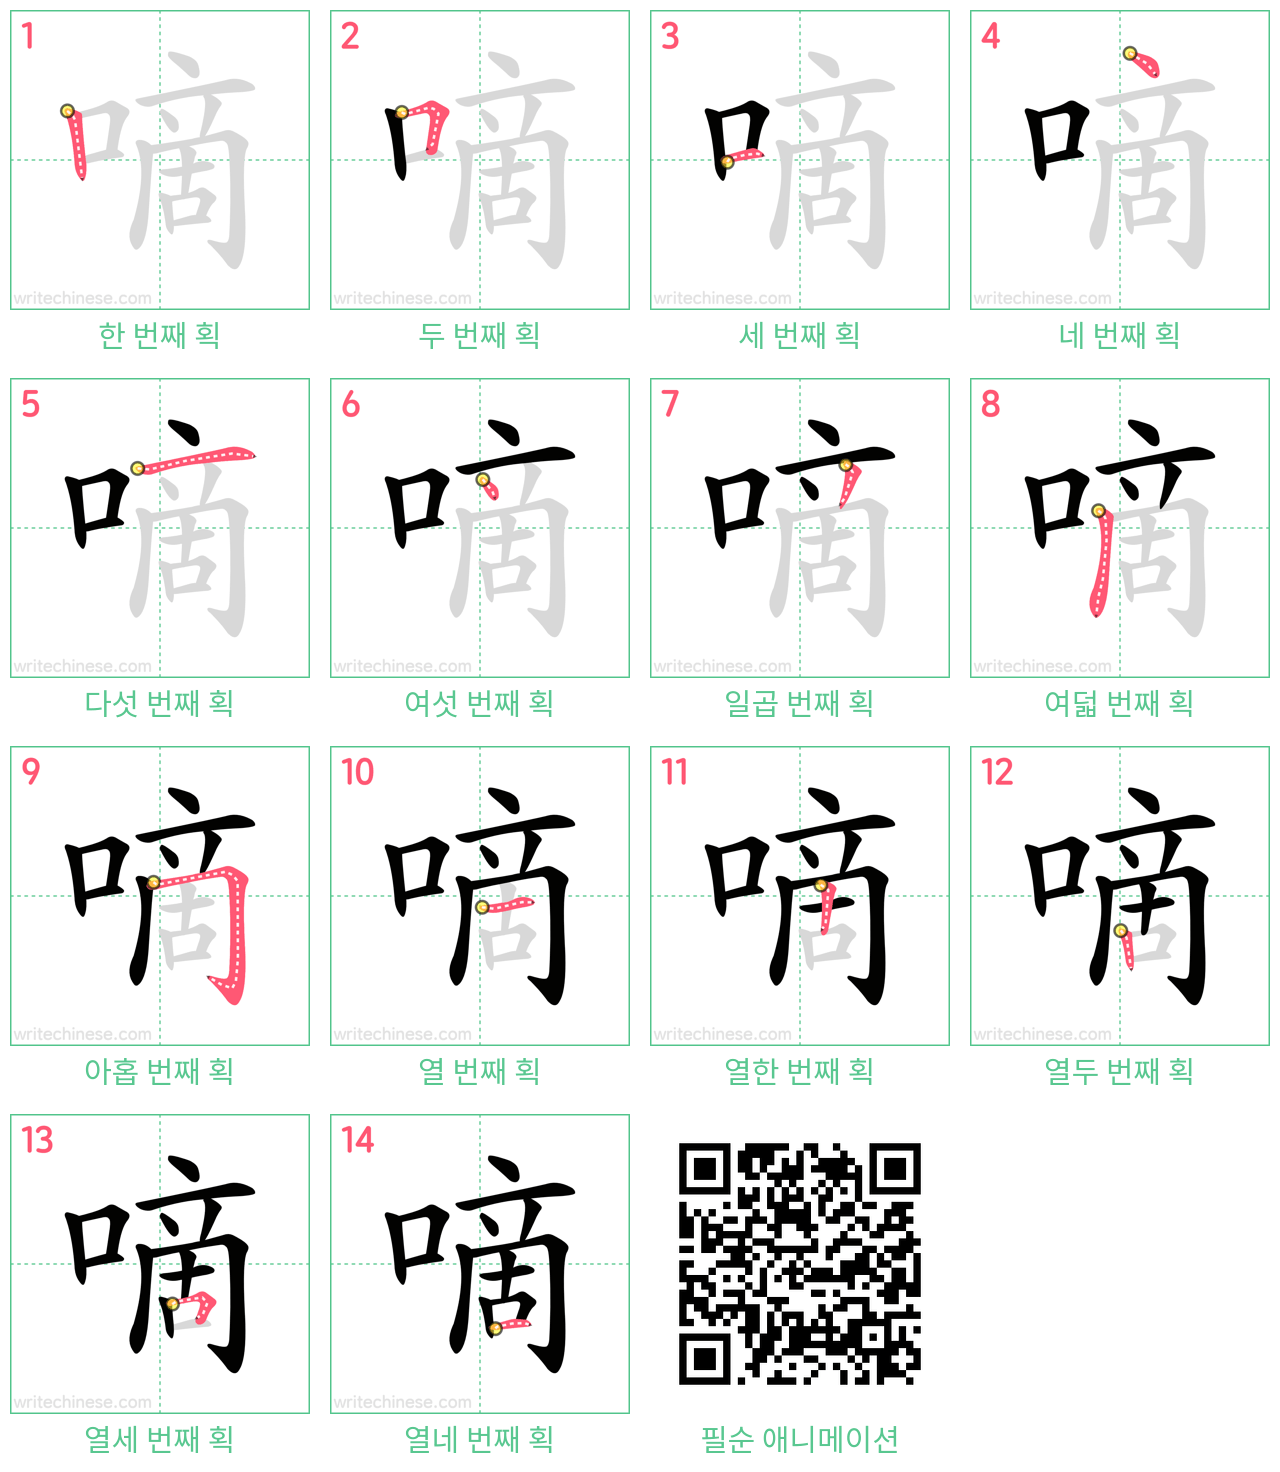 嘀 step-by-step stroke order diagrams